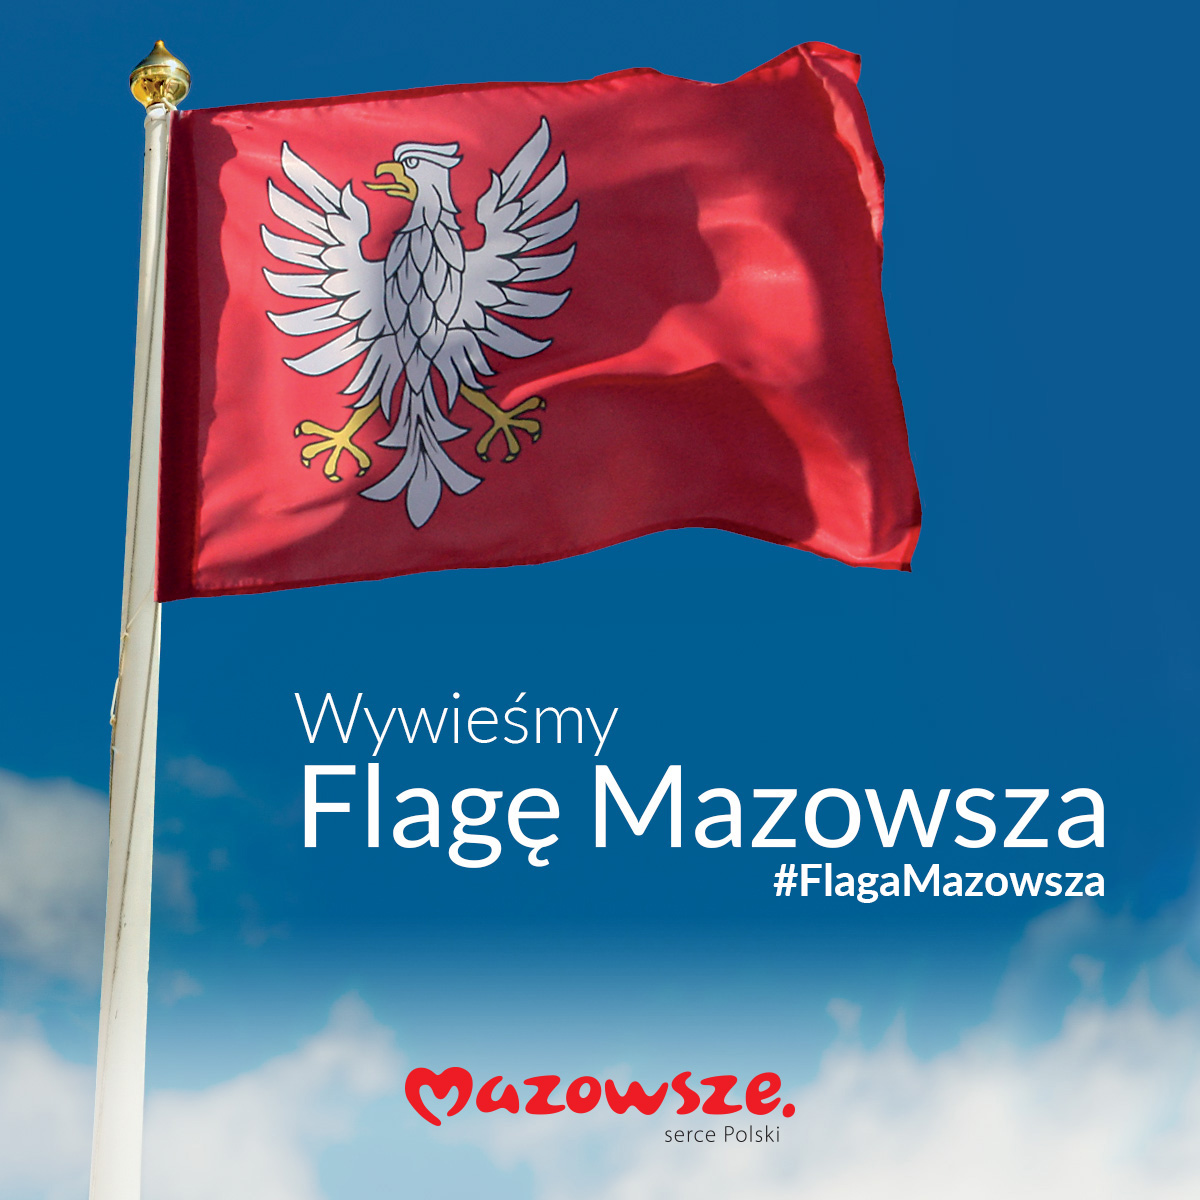 FLAGA MAZOWSZA DOSTĘPNA DLA WSZYSTKICH